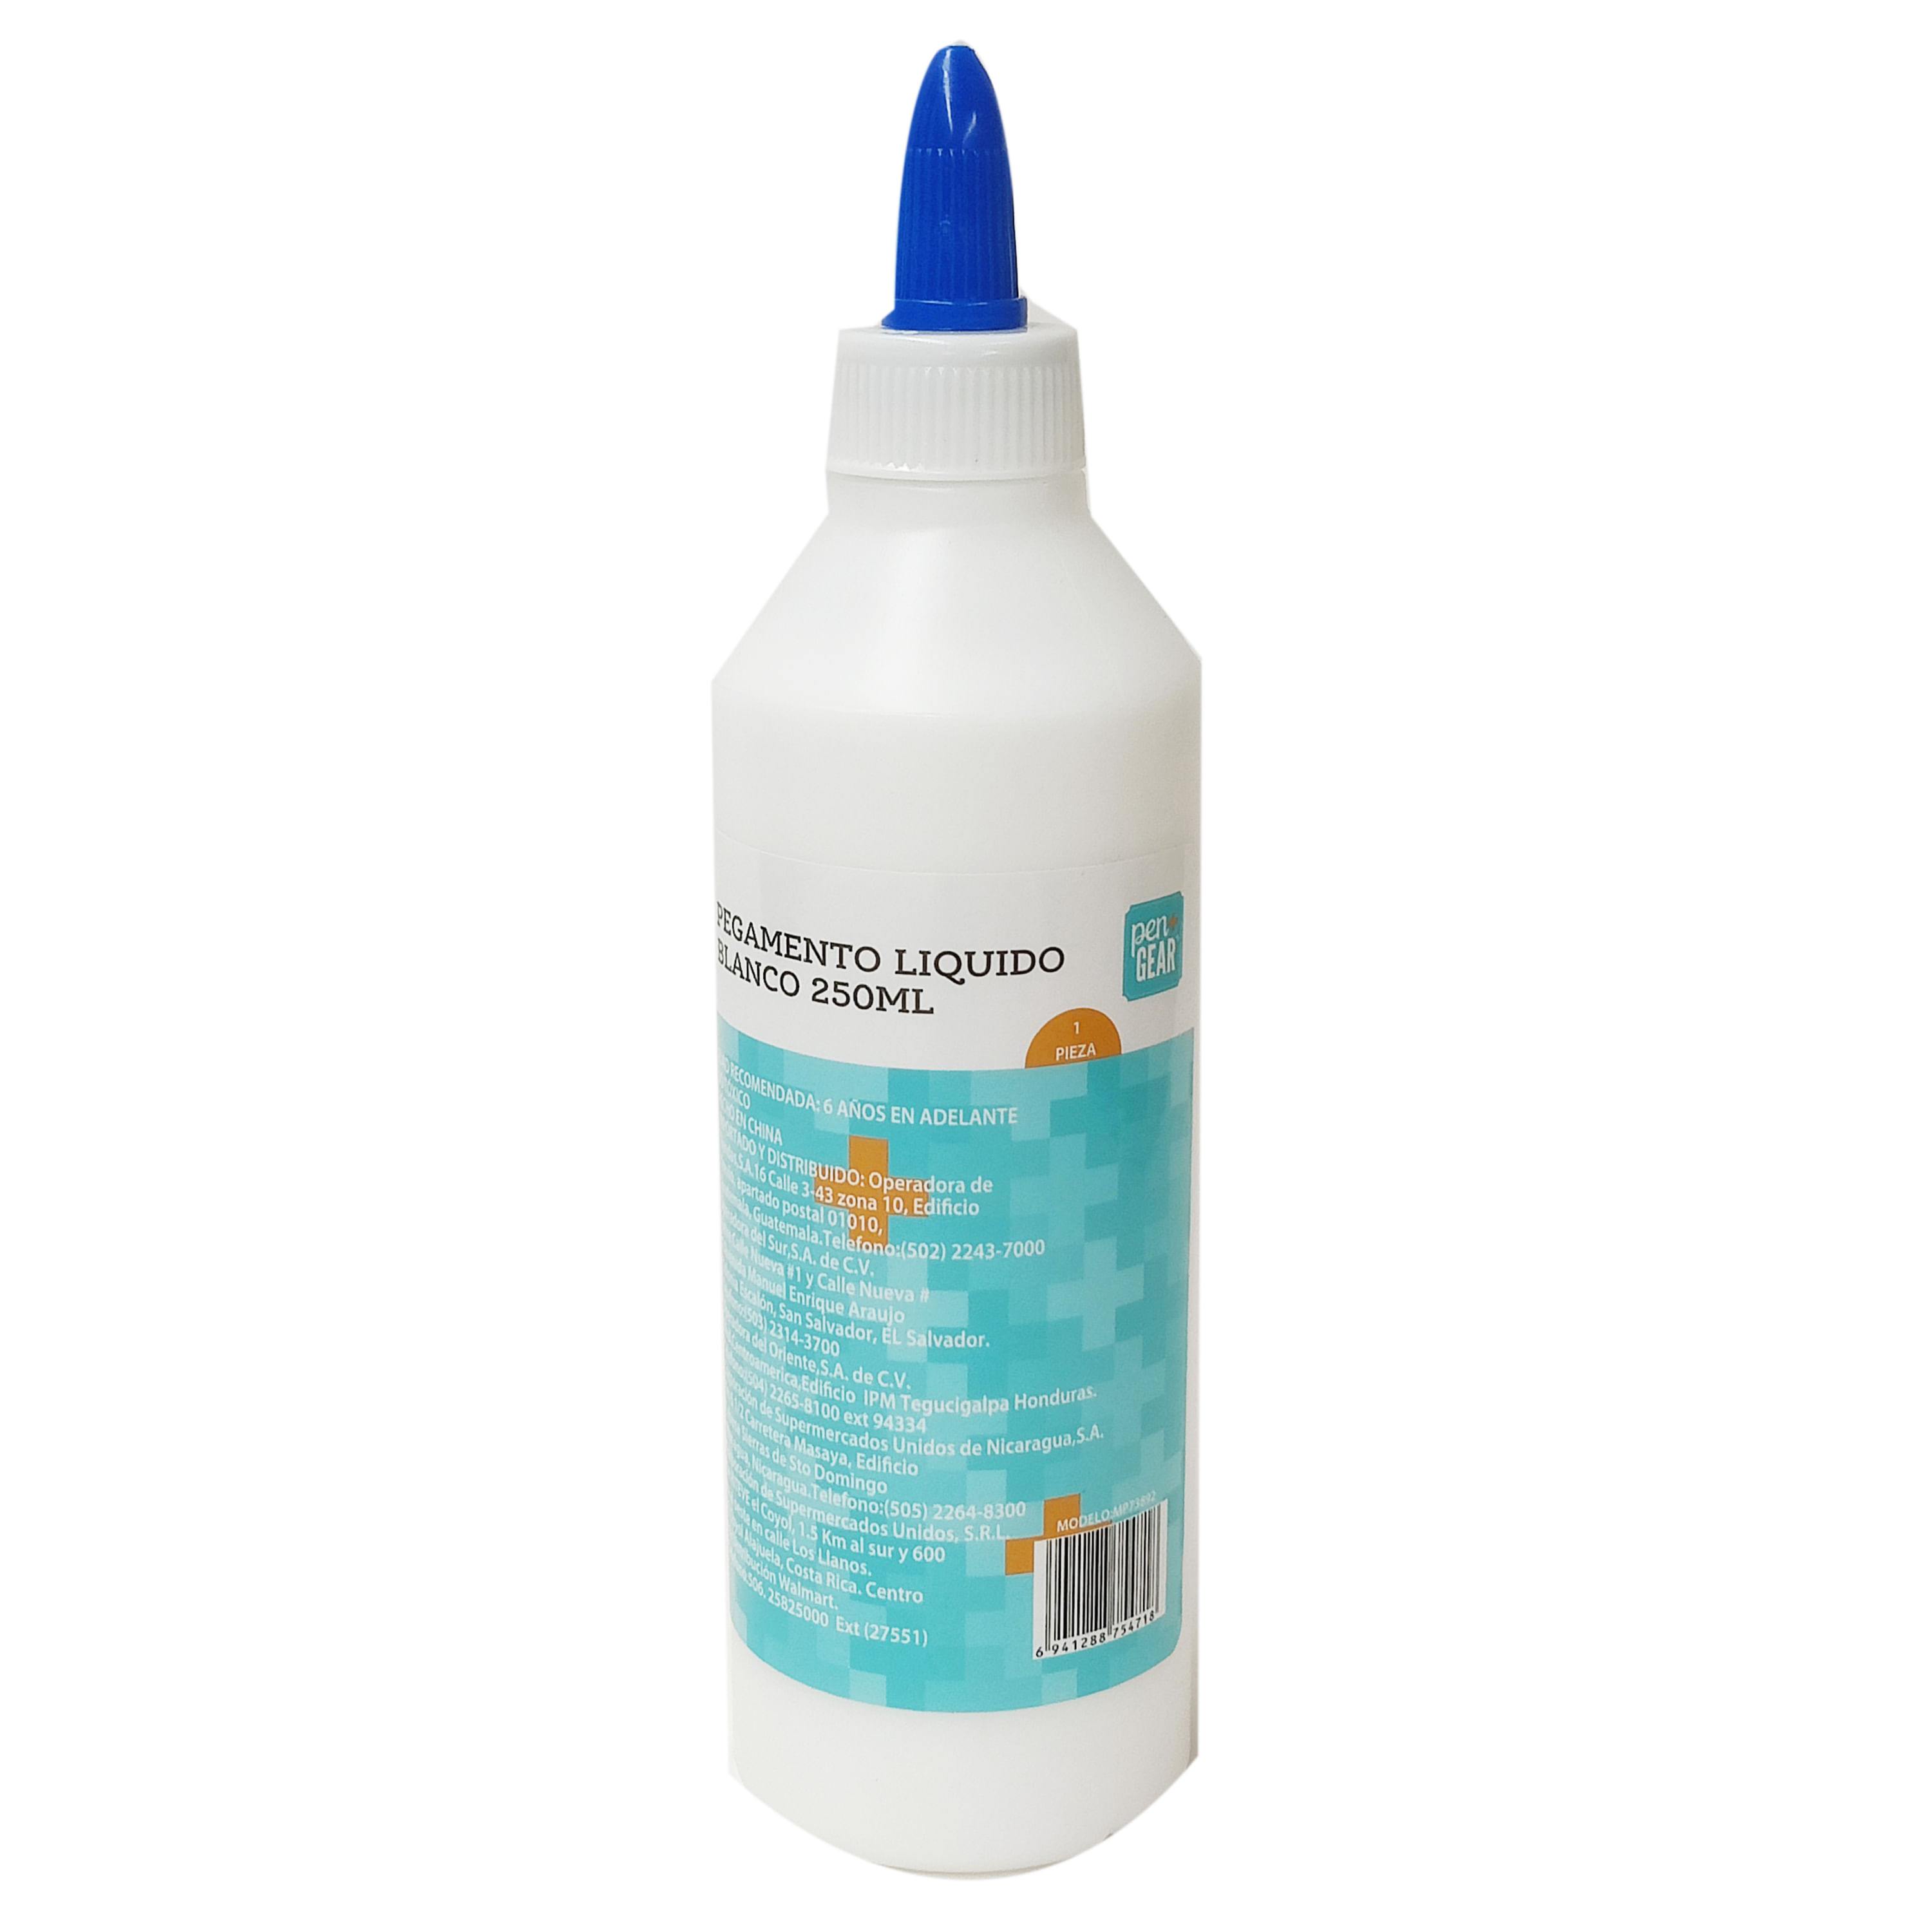 Pegamento Plastico Liquido, Plastic Kit Glue, Bote de 20 ml. Marca Deluxe.  Ref: AD70.